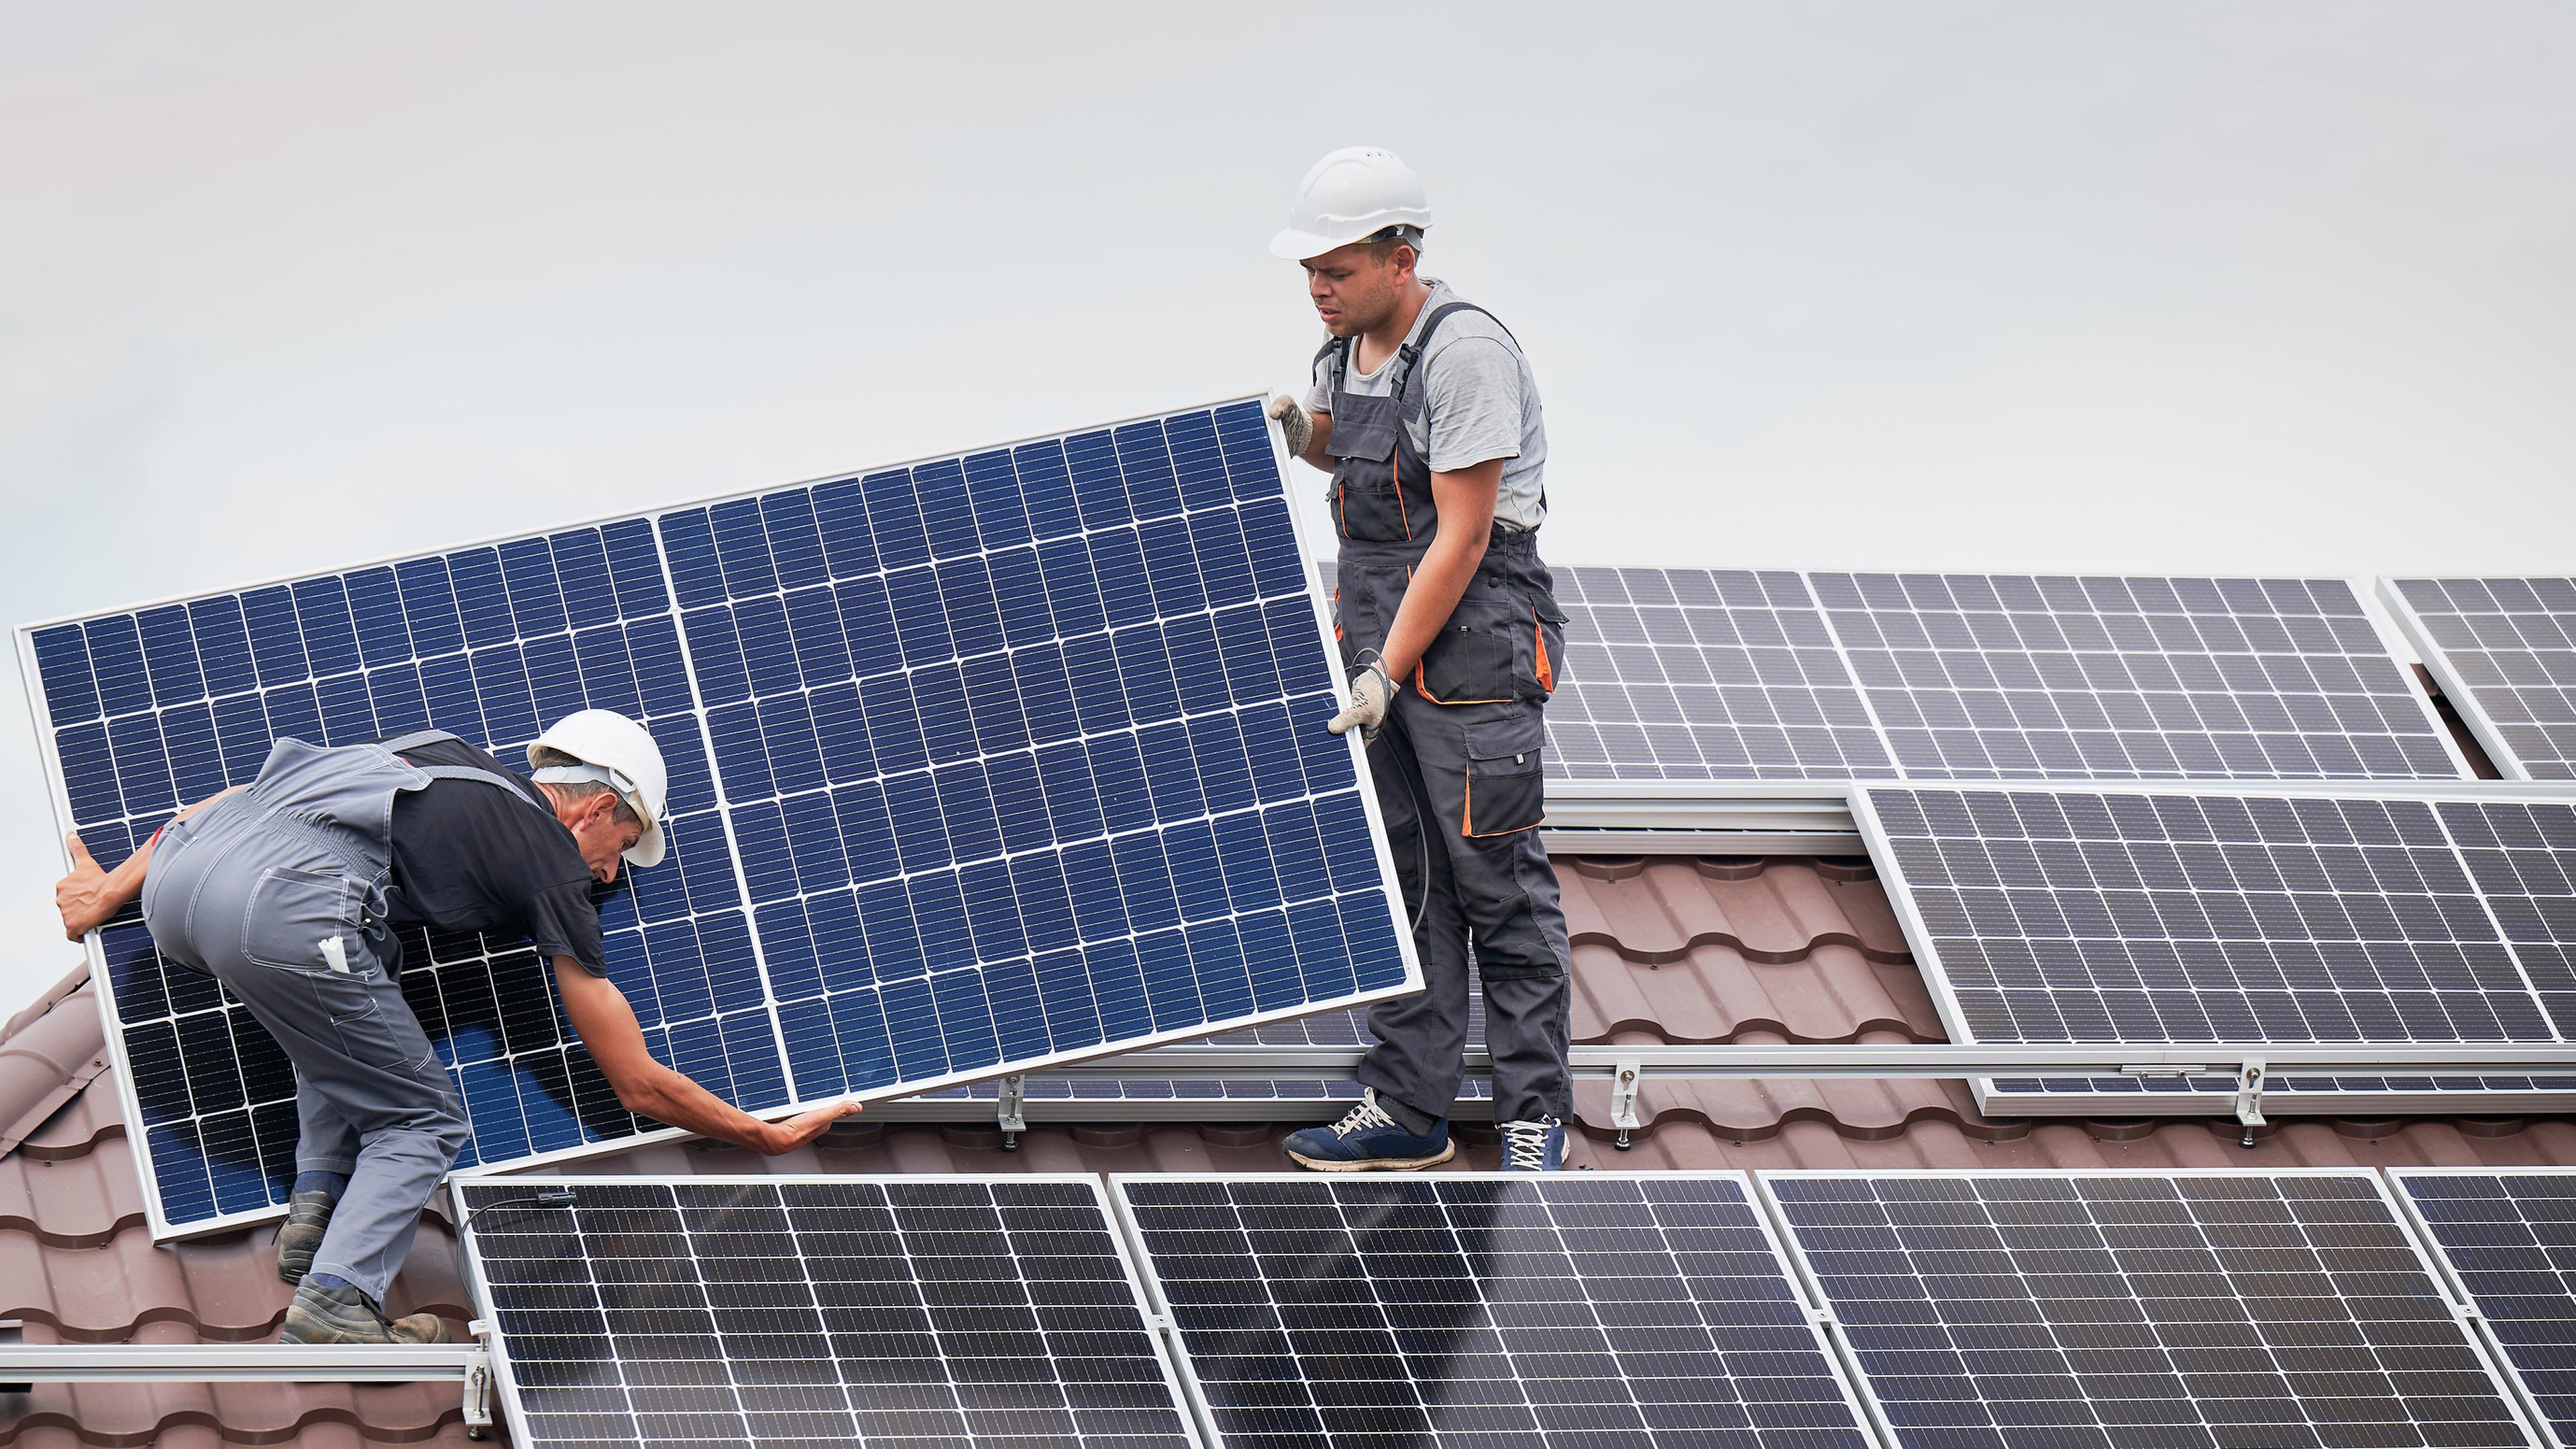 Les résidents qui ne peuvent pas installer de panneaux solaires chez eux pourront ainsi avoir accès à de l’énergie renouvelable produite localement.